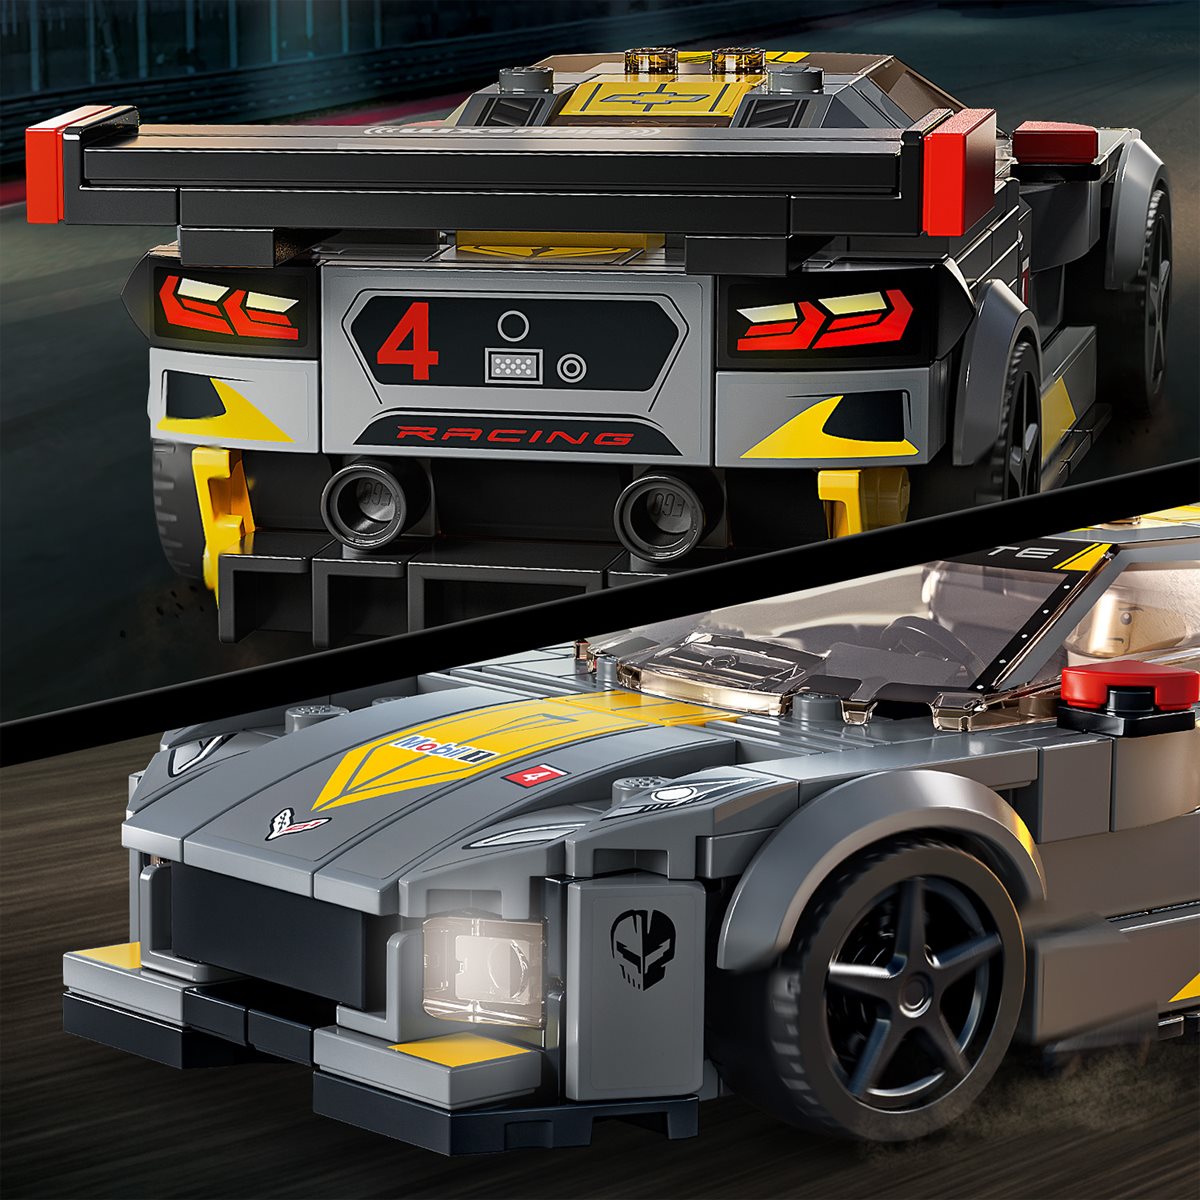 LEGO® 76903 Speed Champions Chevrolet Corvette C8.R Race Car et